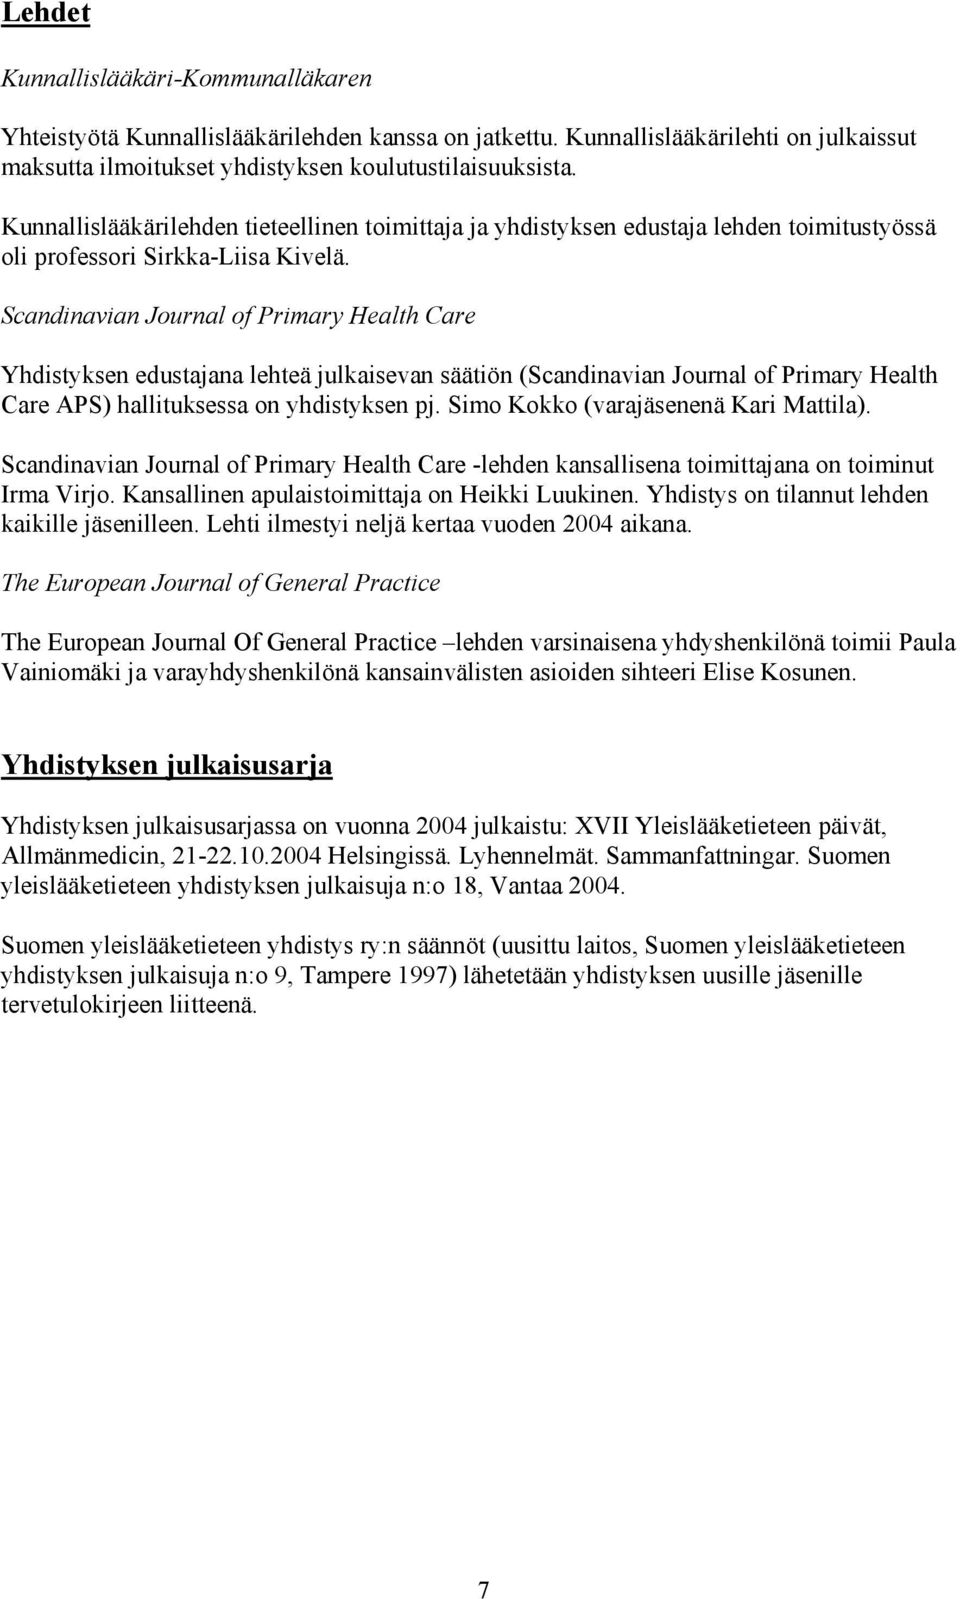 Scandinavian Journal of Primary Health Care Yhdistyksen edustajana lehteä julkaisevan säätiön (Scandinavian Journal of Primary Health Care APS) hallituksessa on yhdistyksen pj.